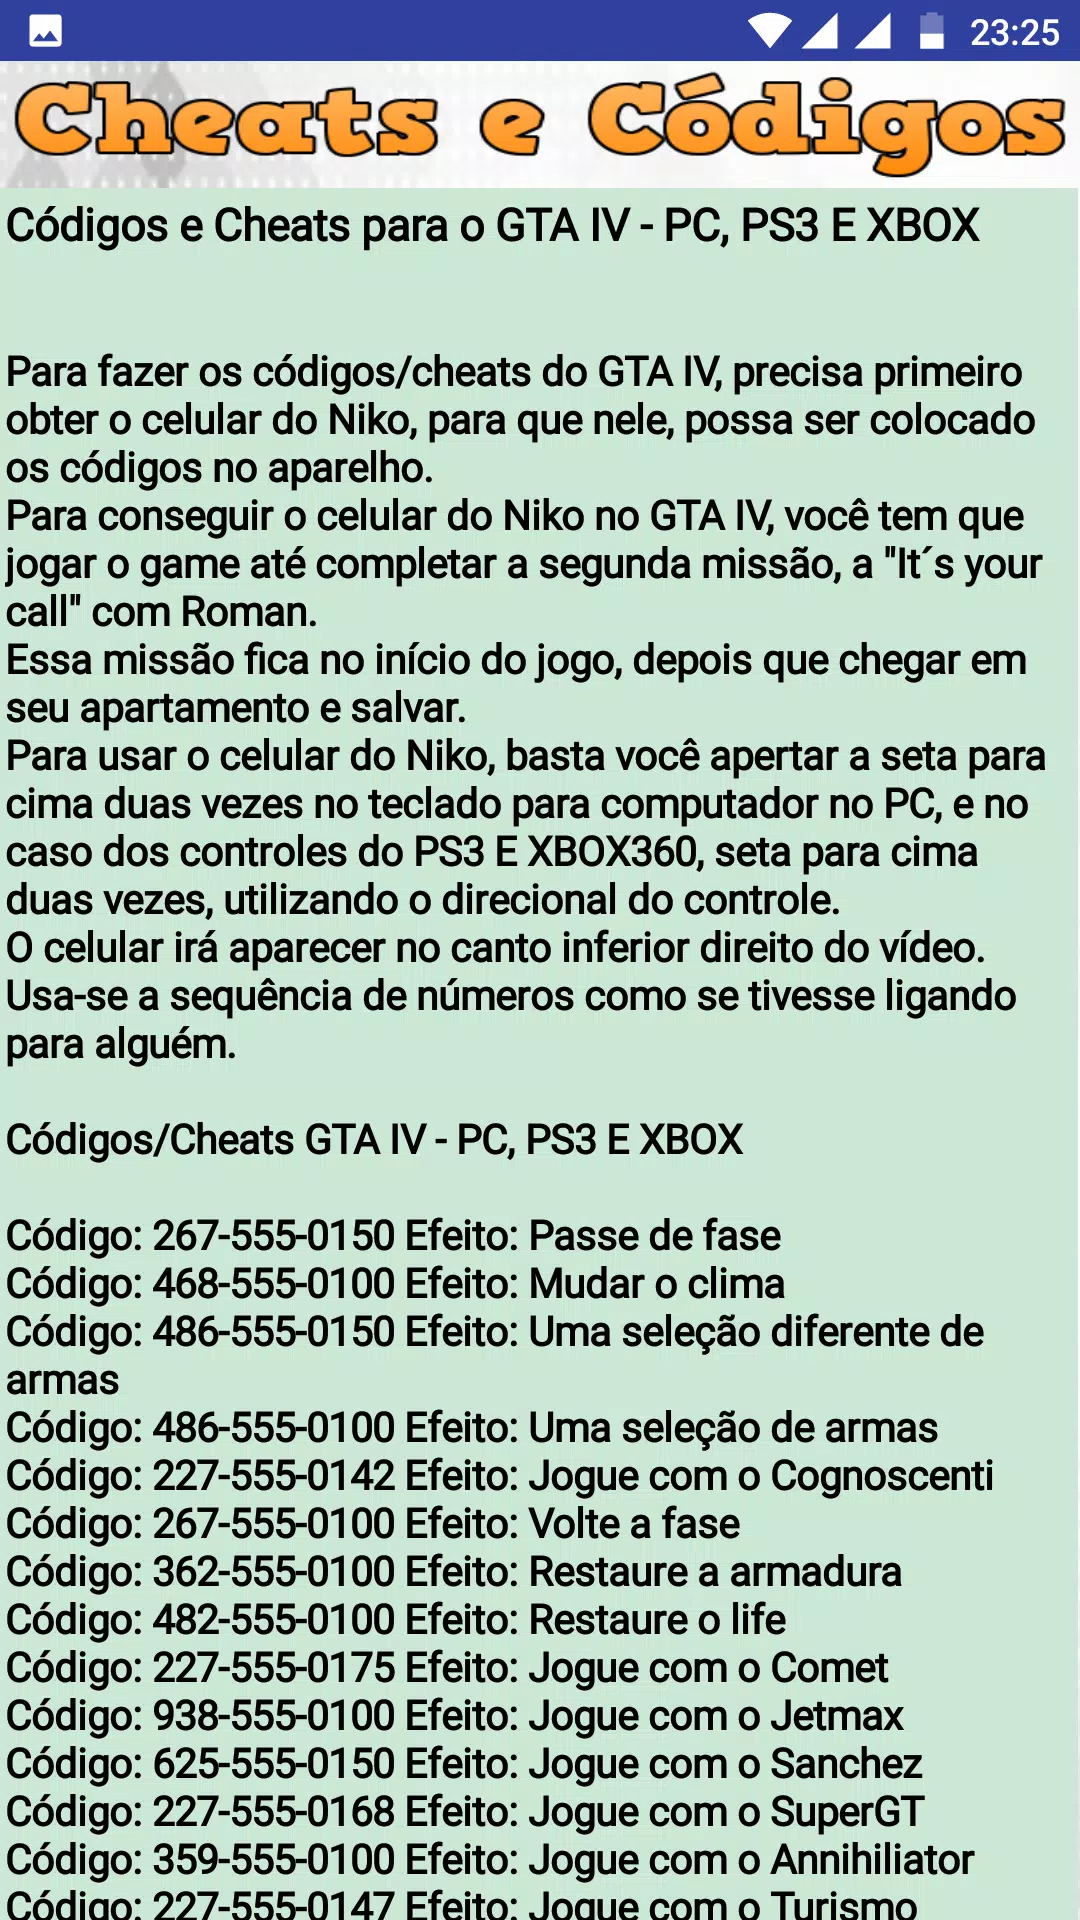 Códigos e cheats de GTA 4 [PS3, Xbox 360 e PC] – Tecnoblog